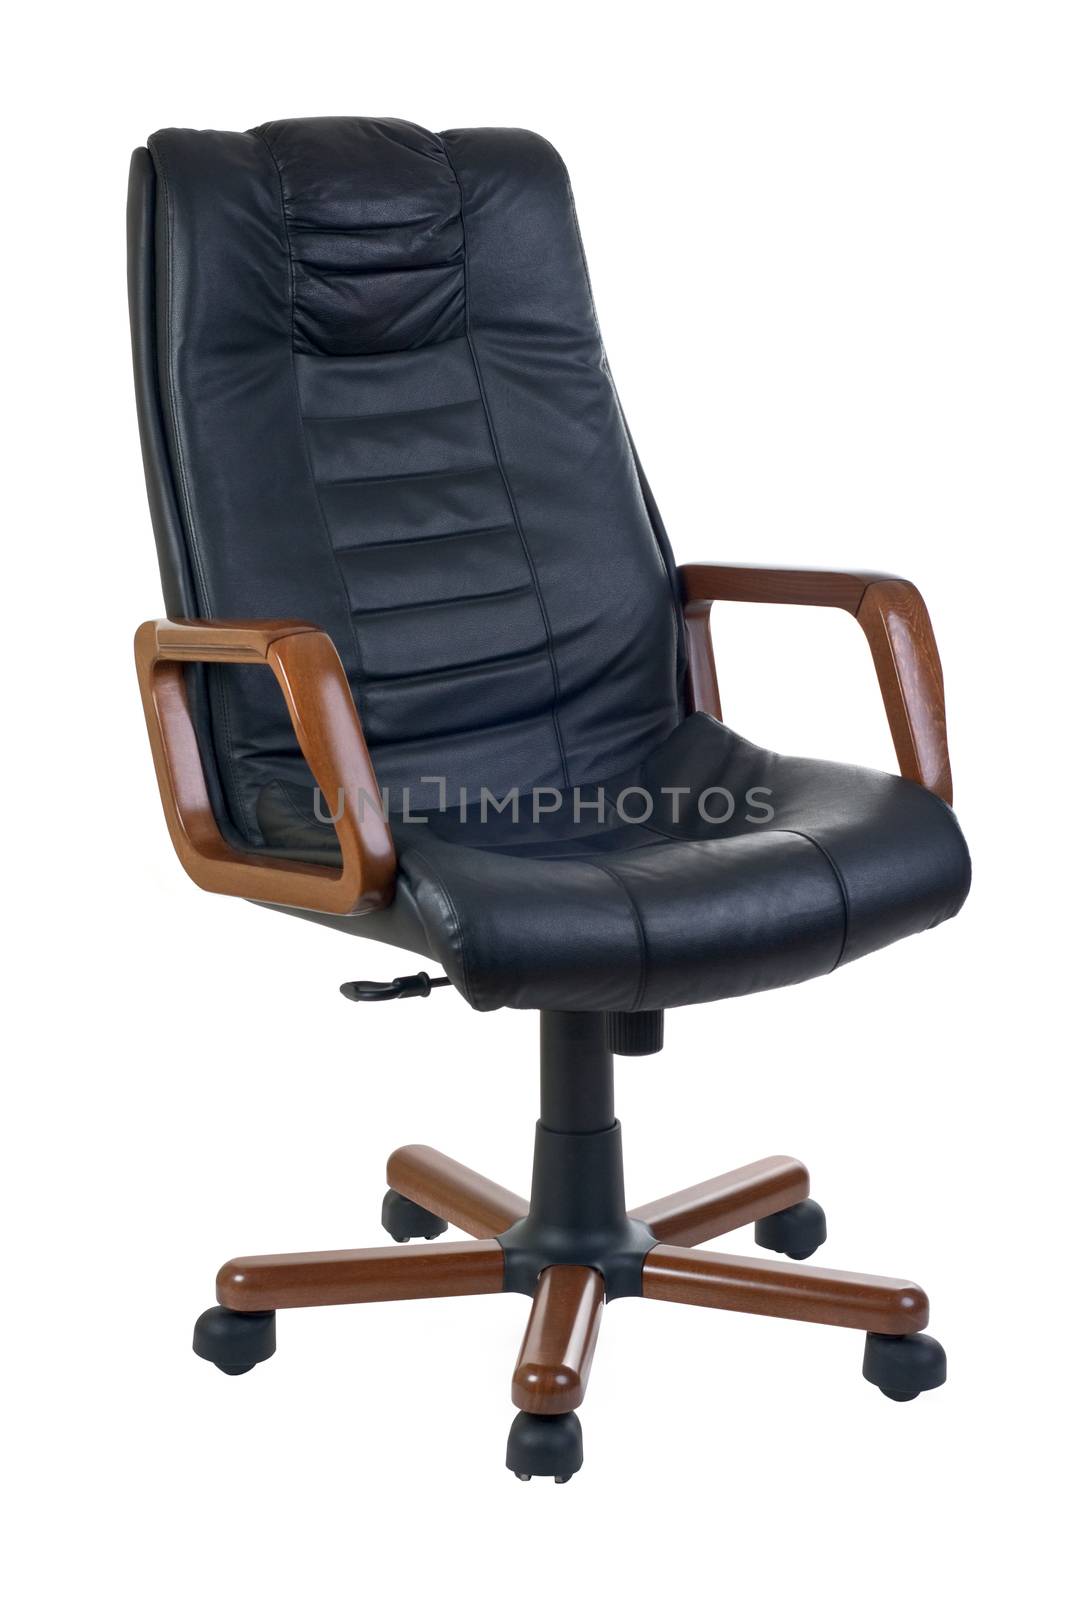 Executive armchair cutout by vkstudio